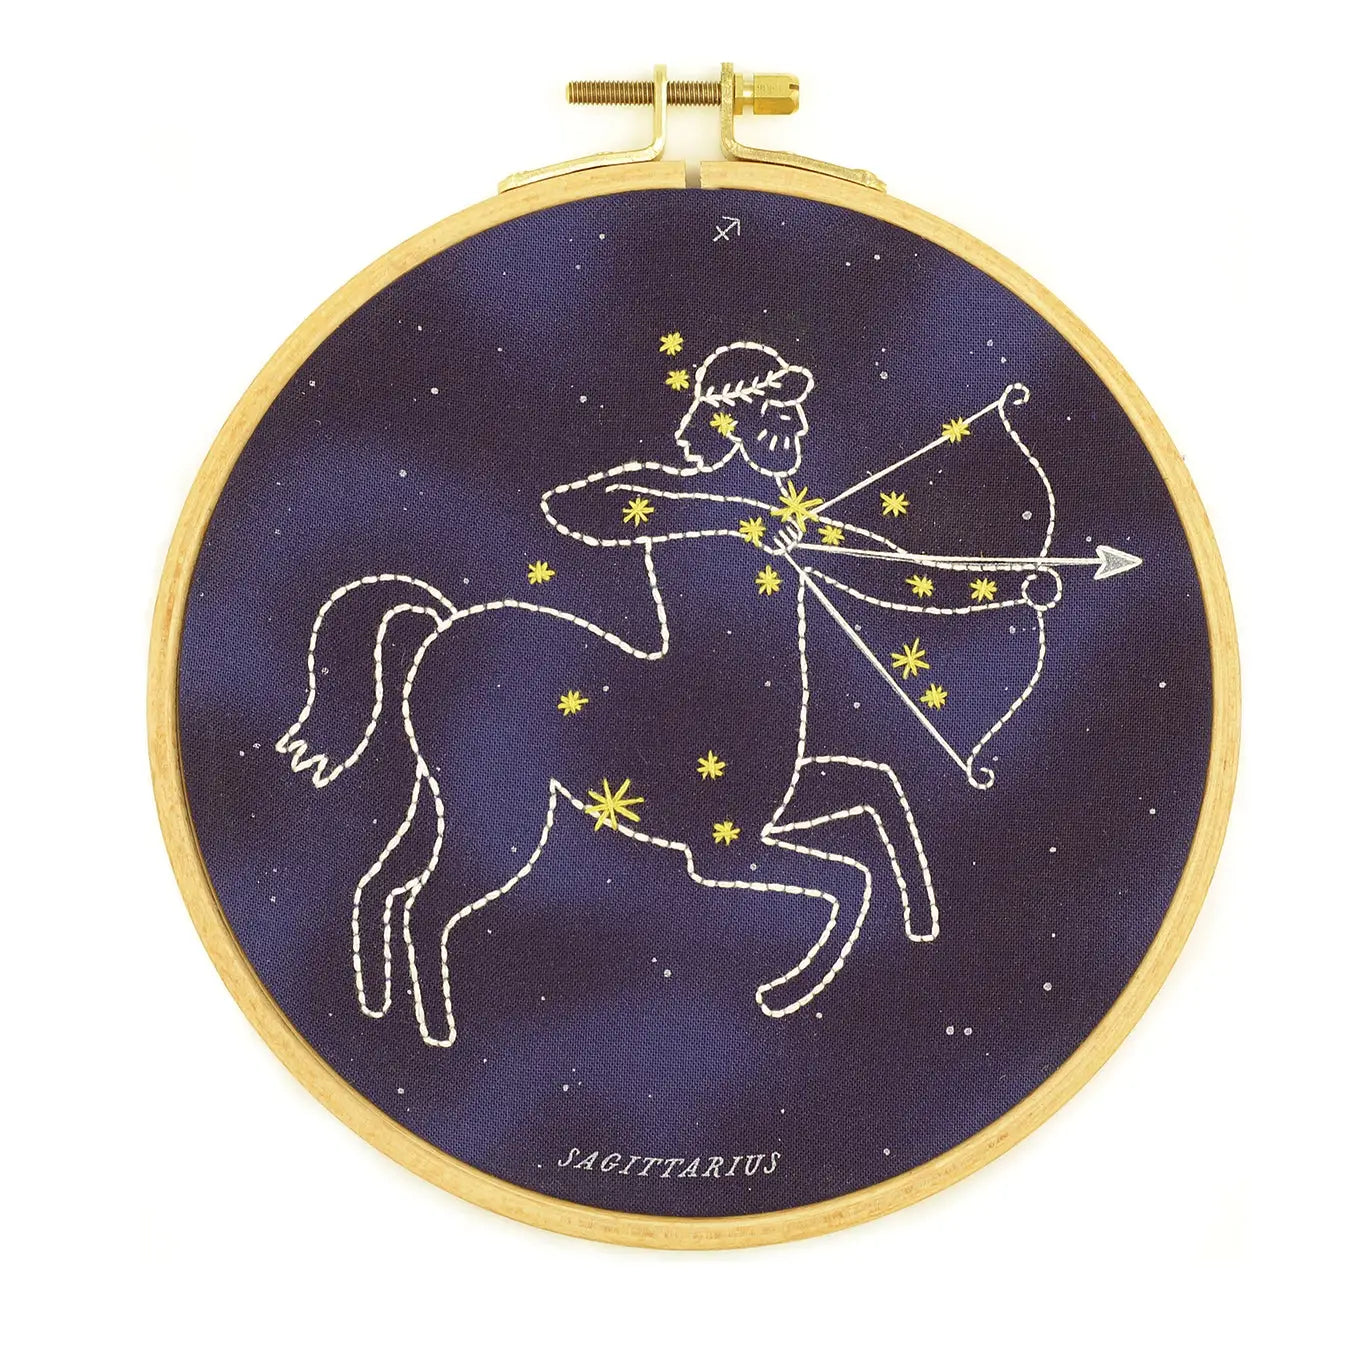 Sagittarius embroidery hoop kit